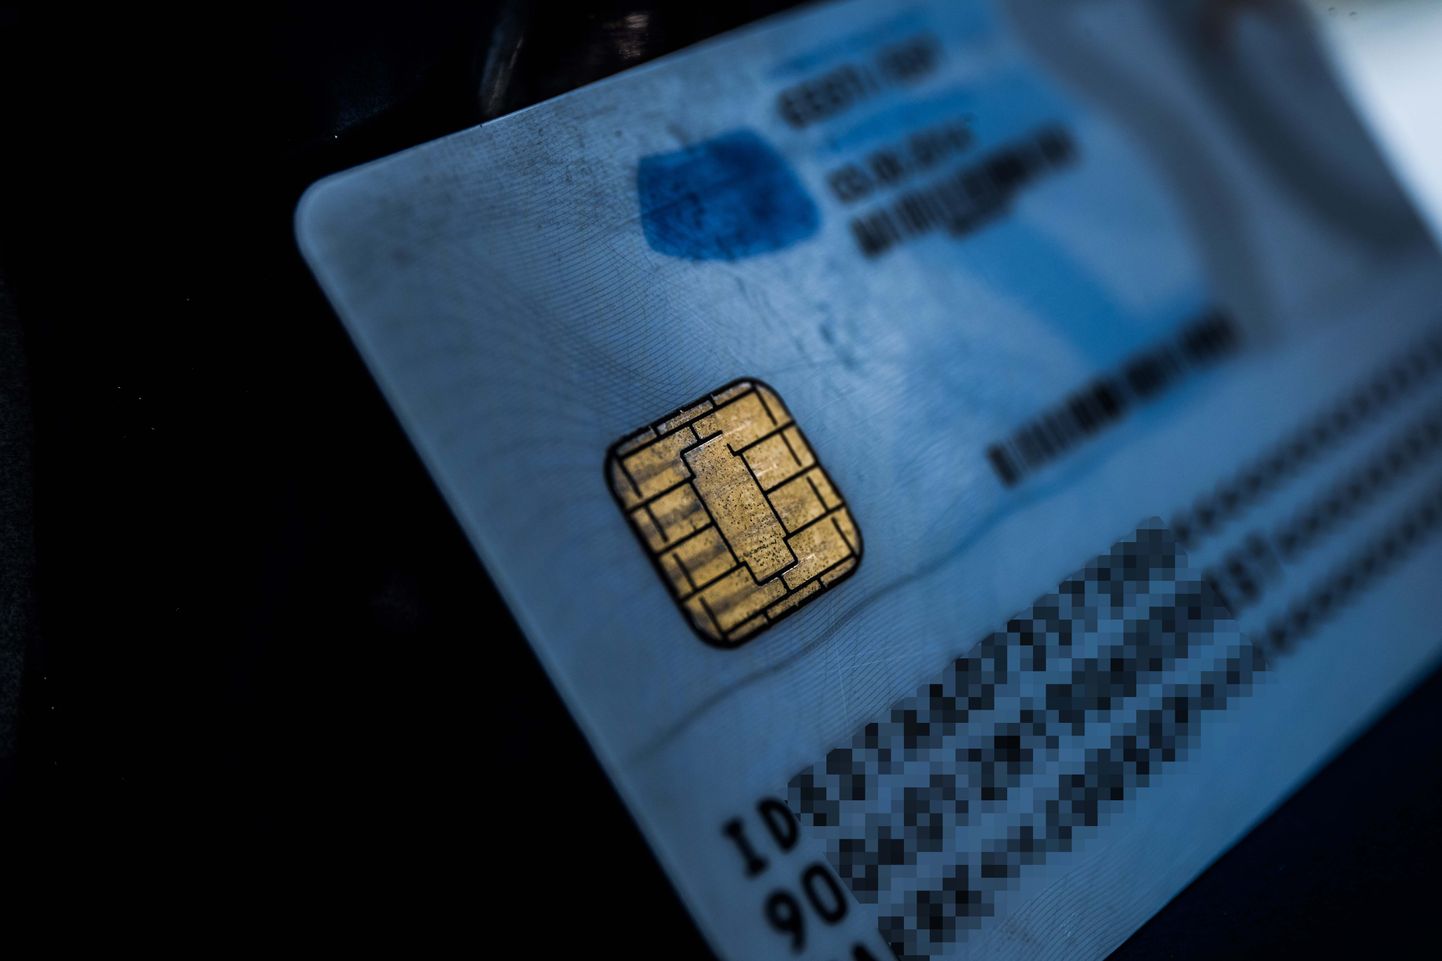 Kui läinud suvel avastasid RIA eksperdid turvanõrkuse paarikümnel Eesti veebilehel, mis ei kontrollinud ID-kaardiga autentimisel sertifikaatide kehtivust ja allkirjastatust, siis detsembris avastati ühel kiirlaenu pakkuva ettevõtte veebilehel sarnane turvanõrkus.